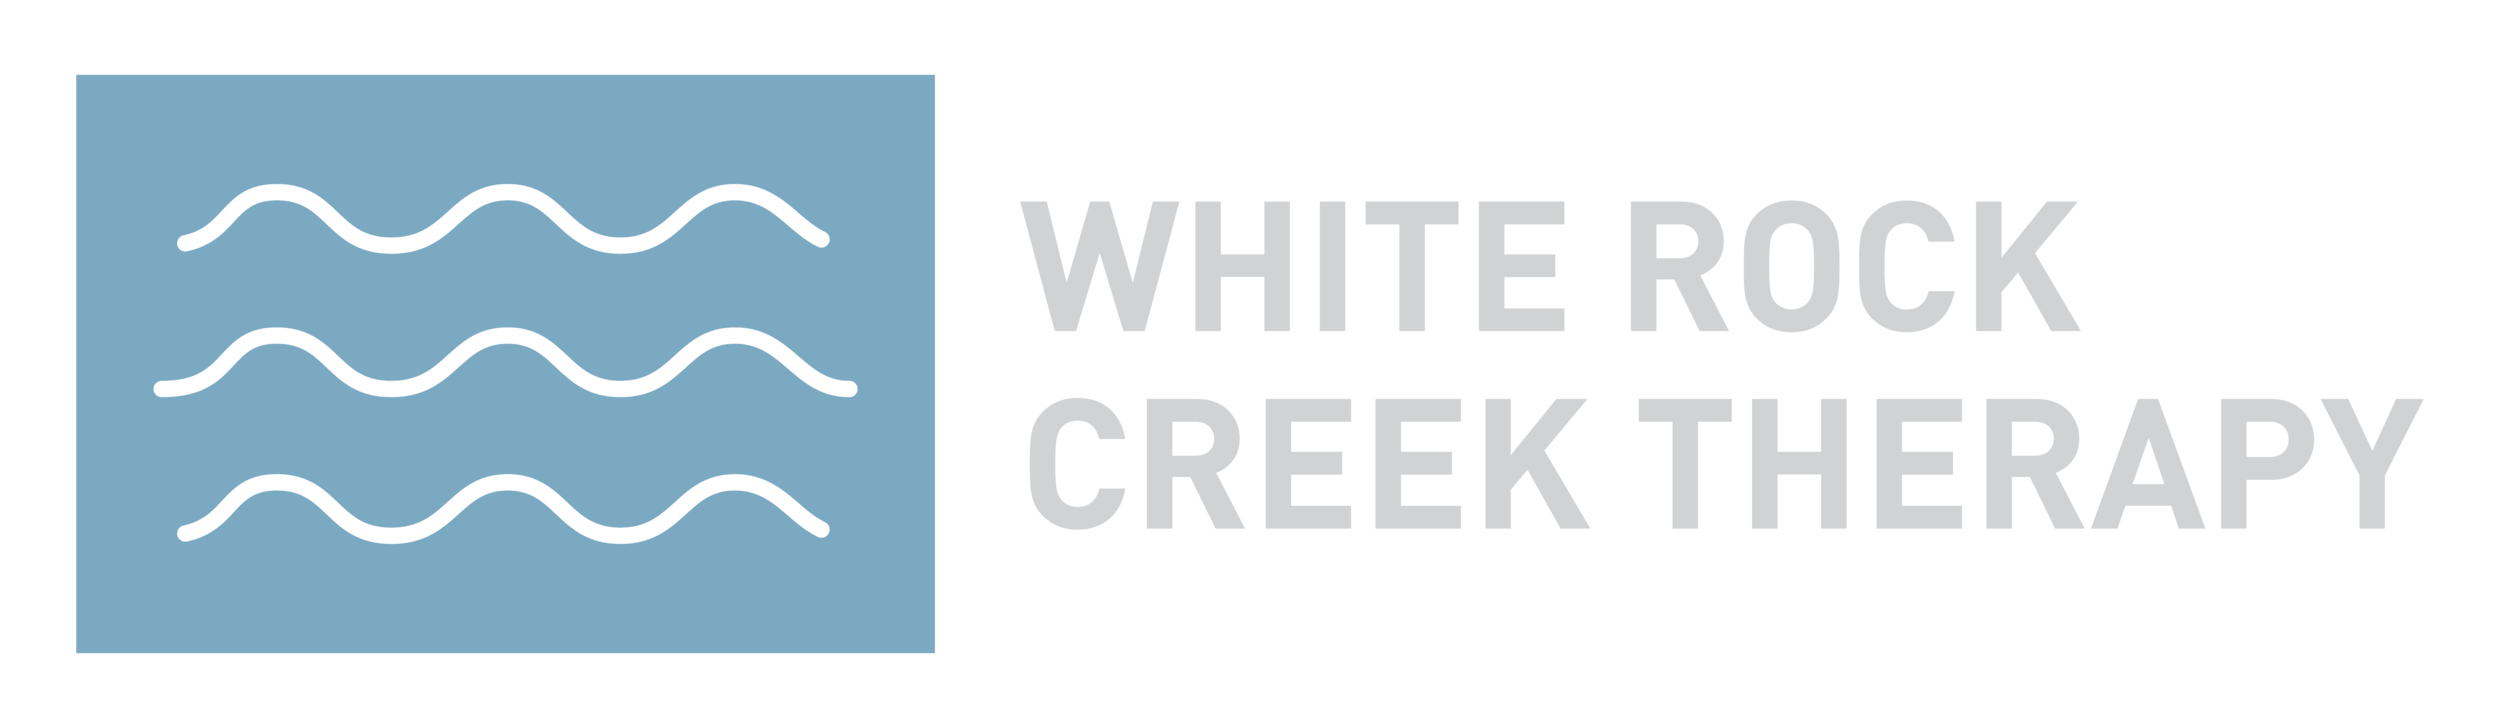 White Rock Creek Therapy